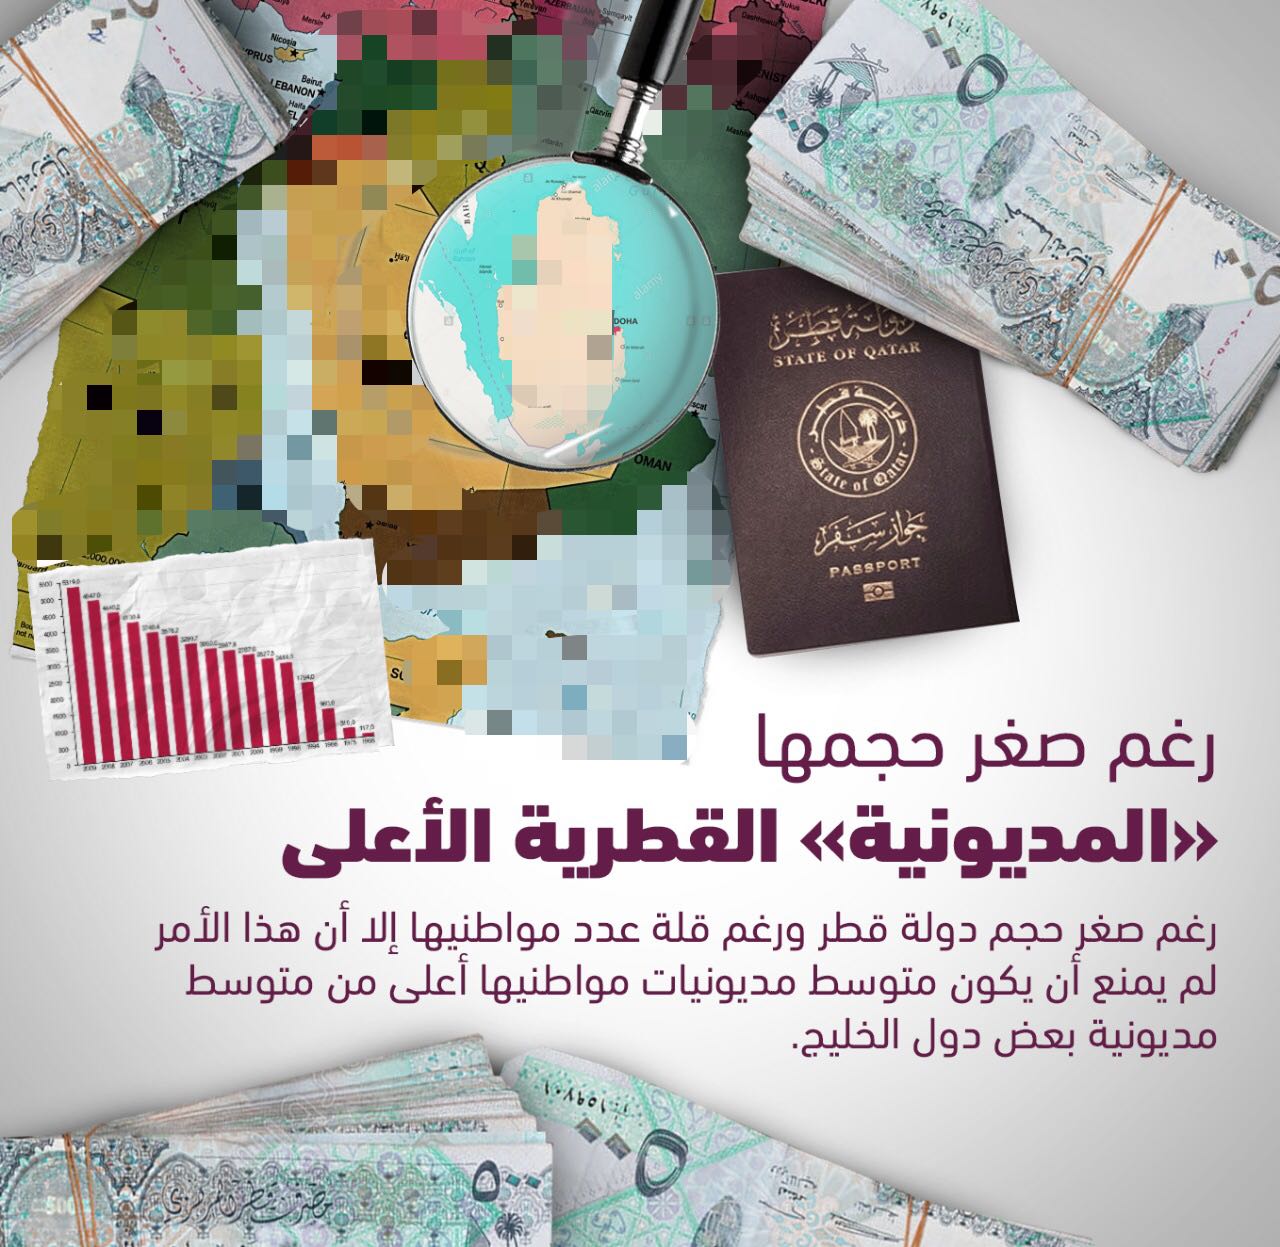 بالأرقام.. القطريون مهددون بالسجن بسبب الديون.. وتميم يبدد أموالهم فى دعم الإرهاب 214261-1